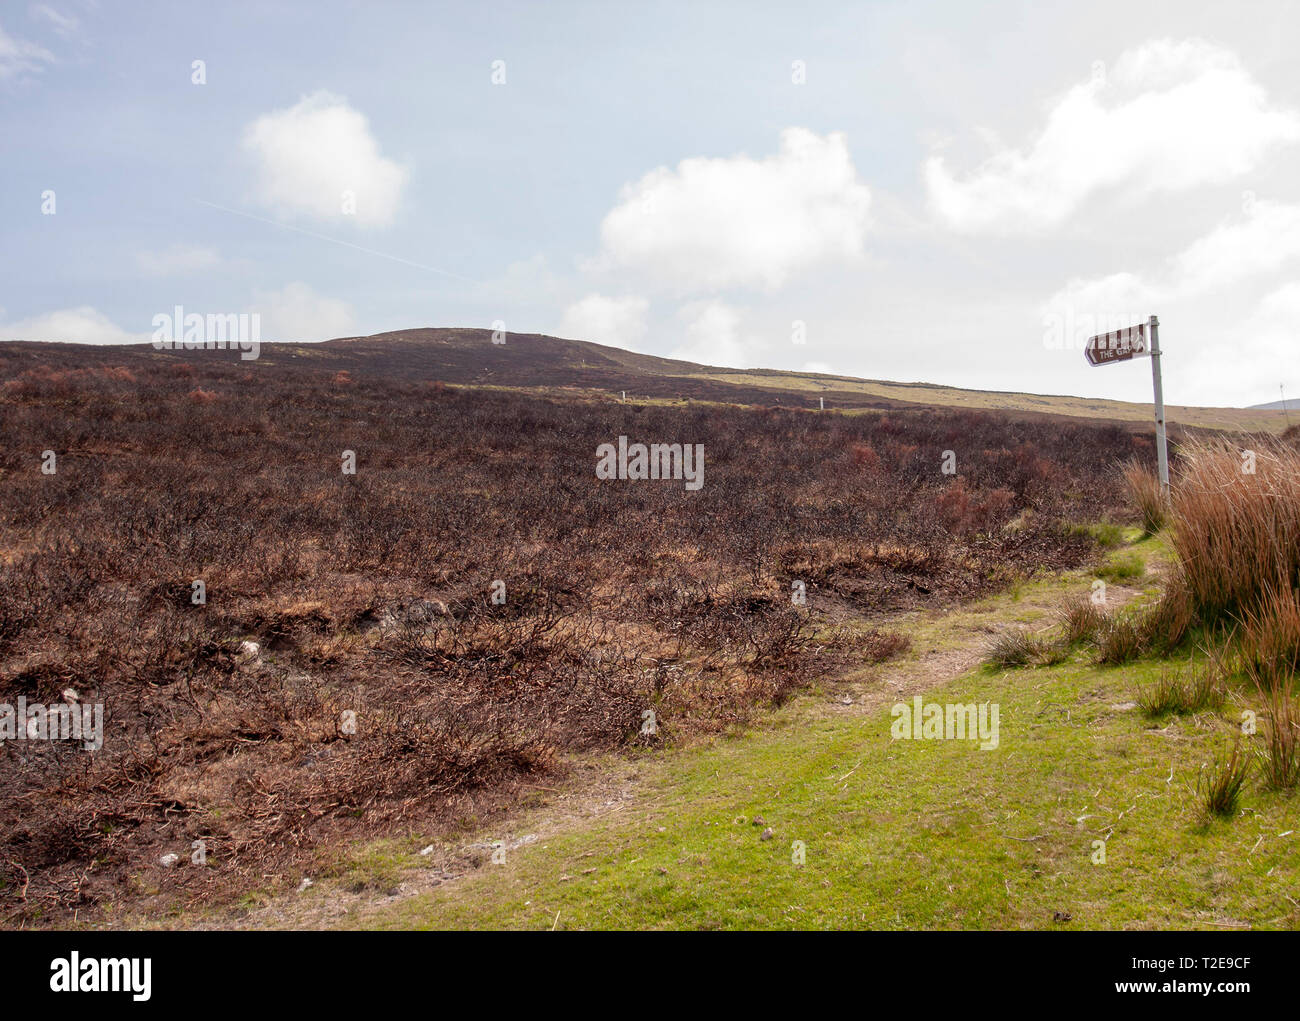 Verbrannter oder gezungter Gorse auf Bergmoorland neben einem Wanderwegschild für "The Gap" in den Comeragh Mountains, County Waterford, Munster, Irland. Stockfoto